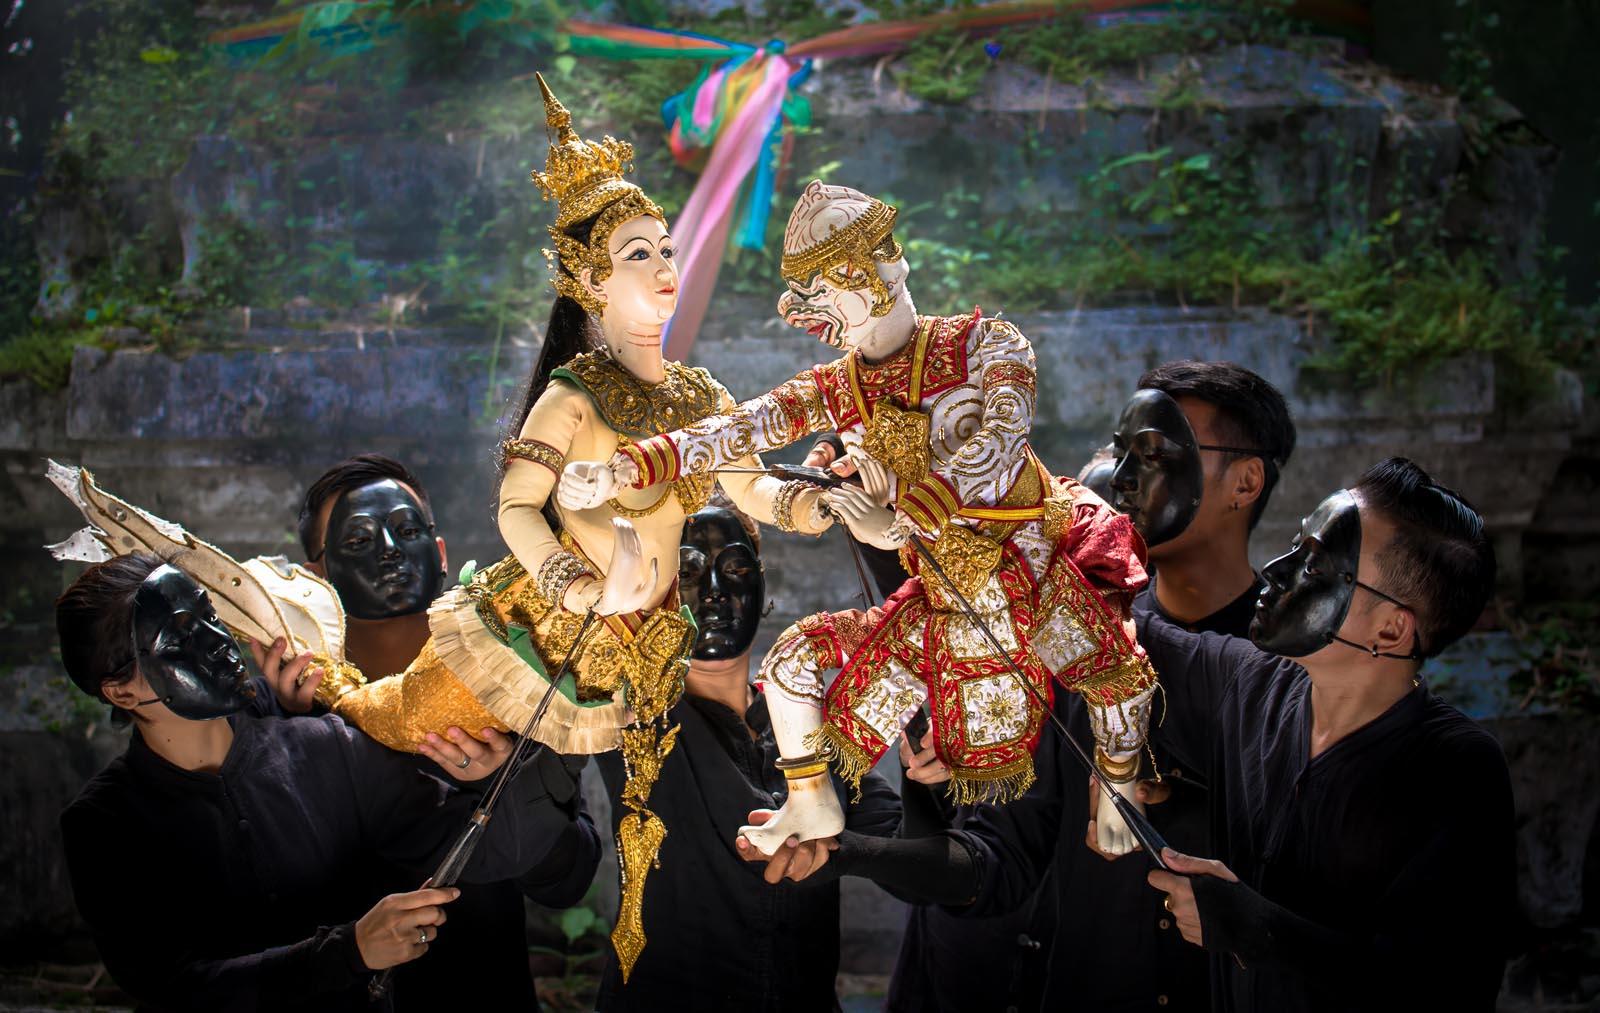 傳統的木偶劇與泰國文化息息相關